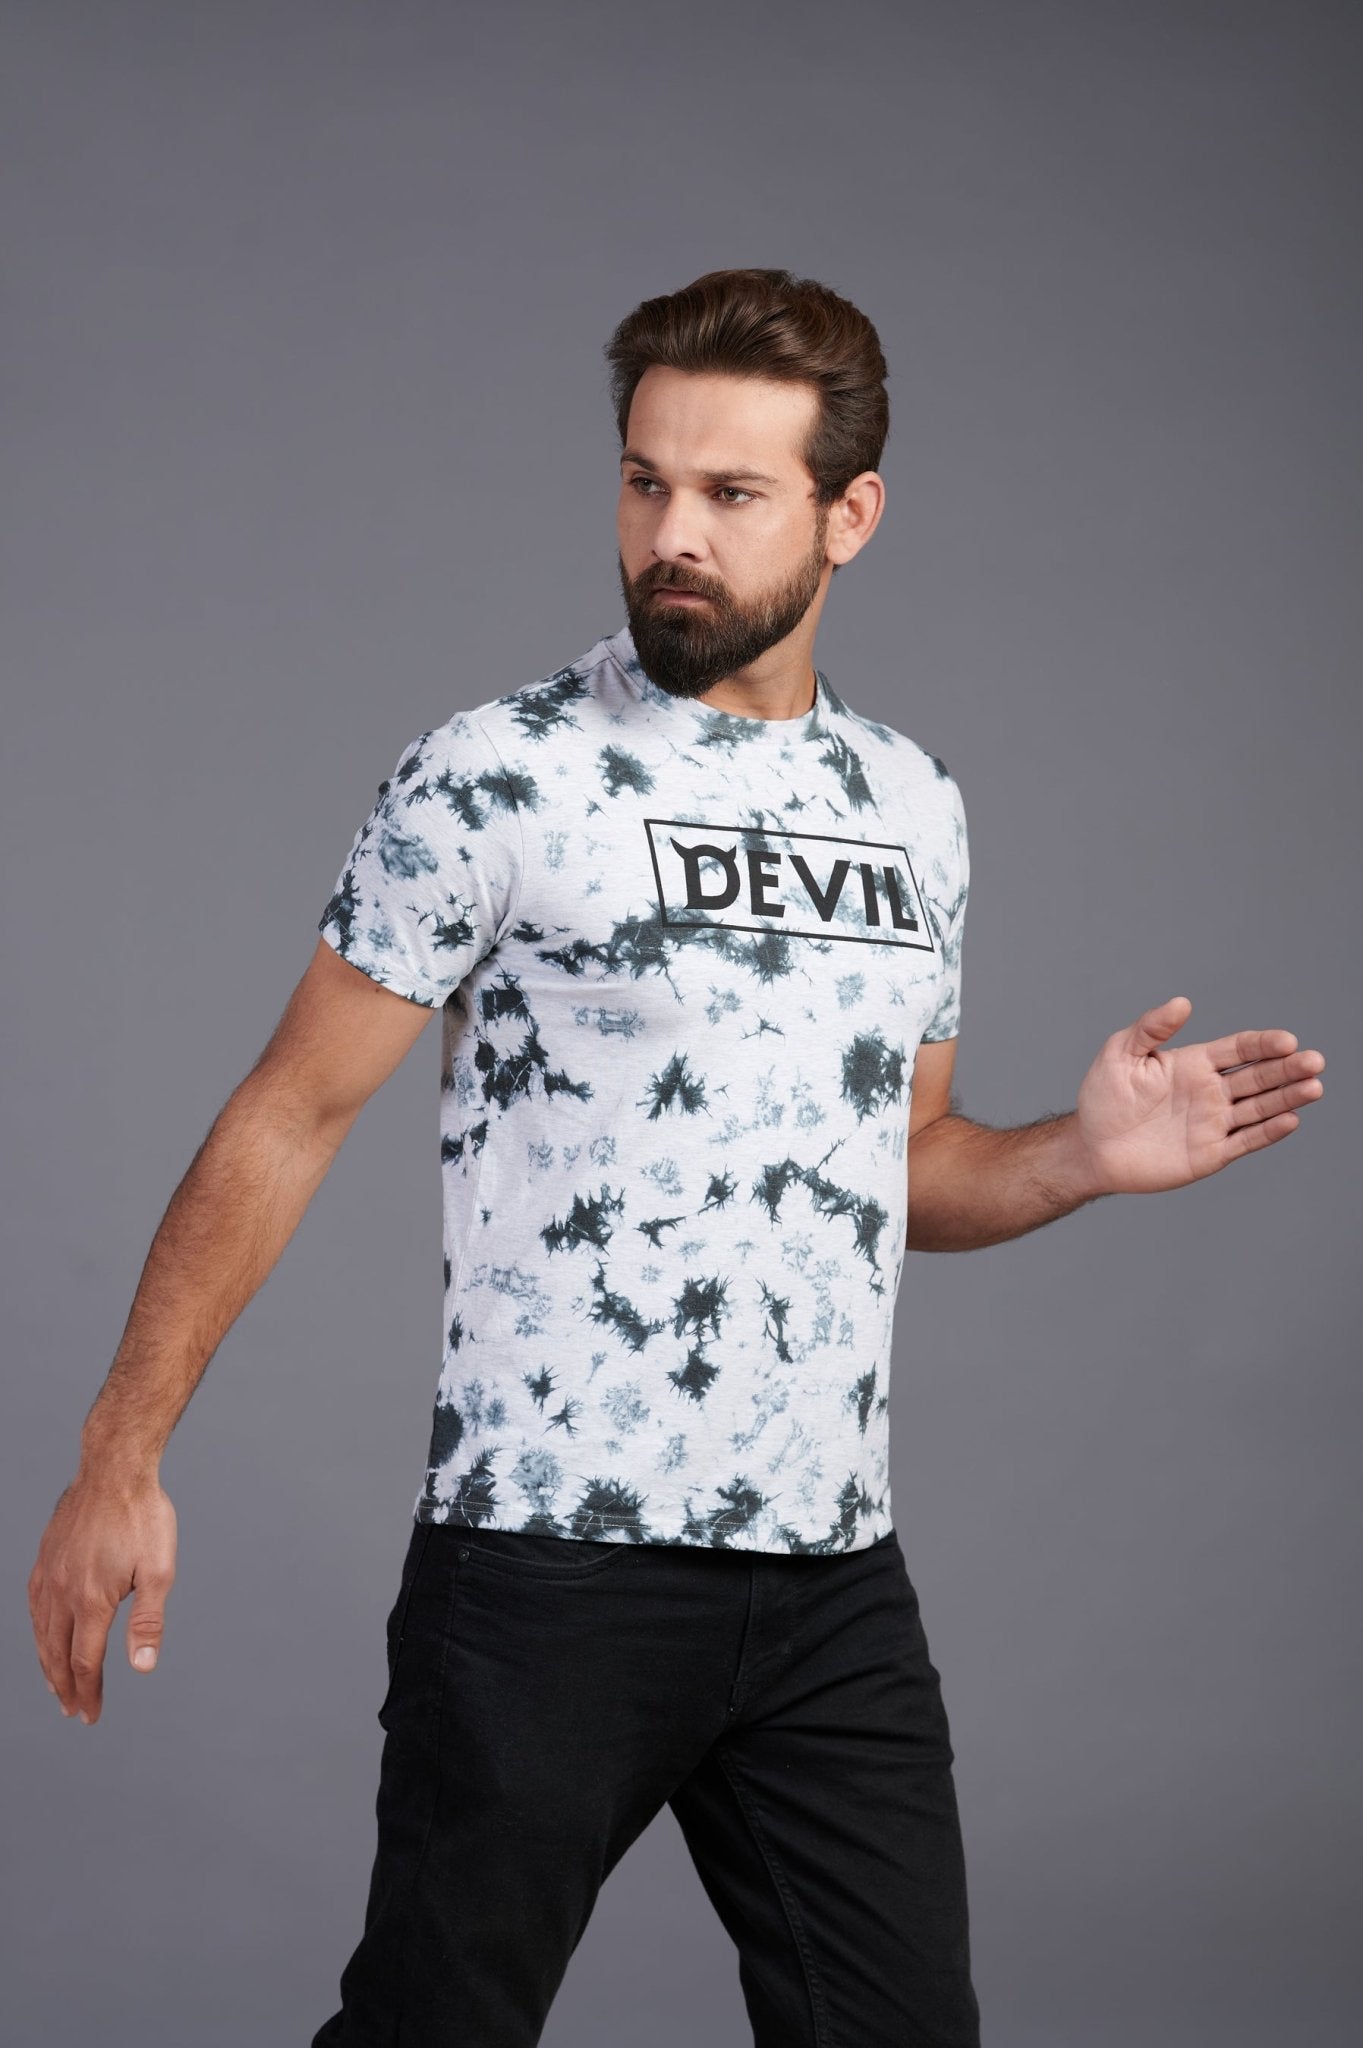 Devil Printed T-Shirt for Men - Go Devil